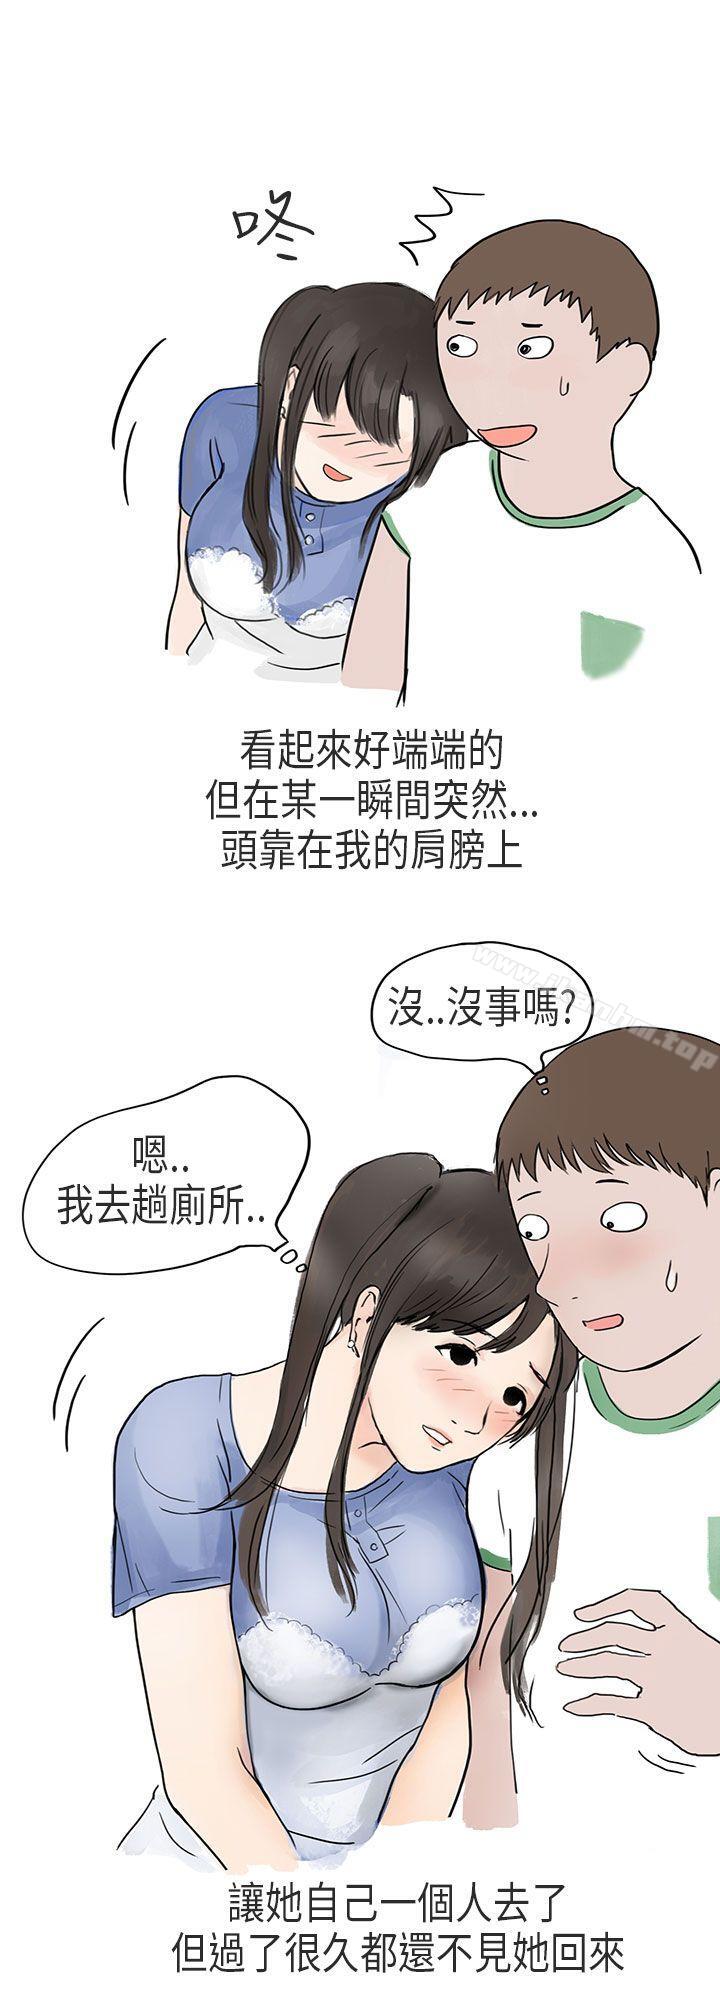 漫画韩国 秘密Story第二季   - 立即阅读 第二季 在Cosplay同好會中(下)第1漫画图片